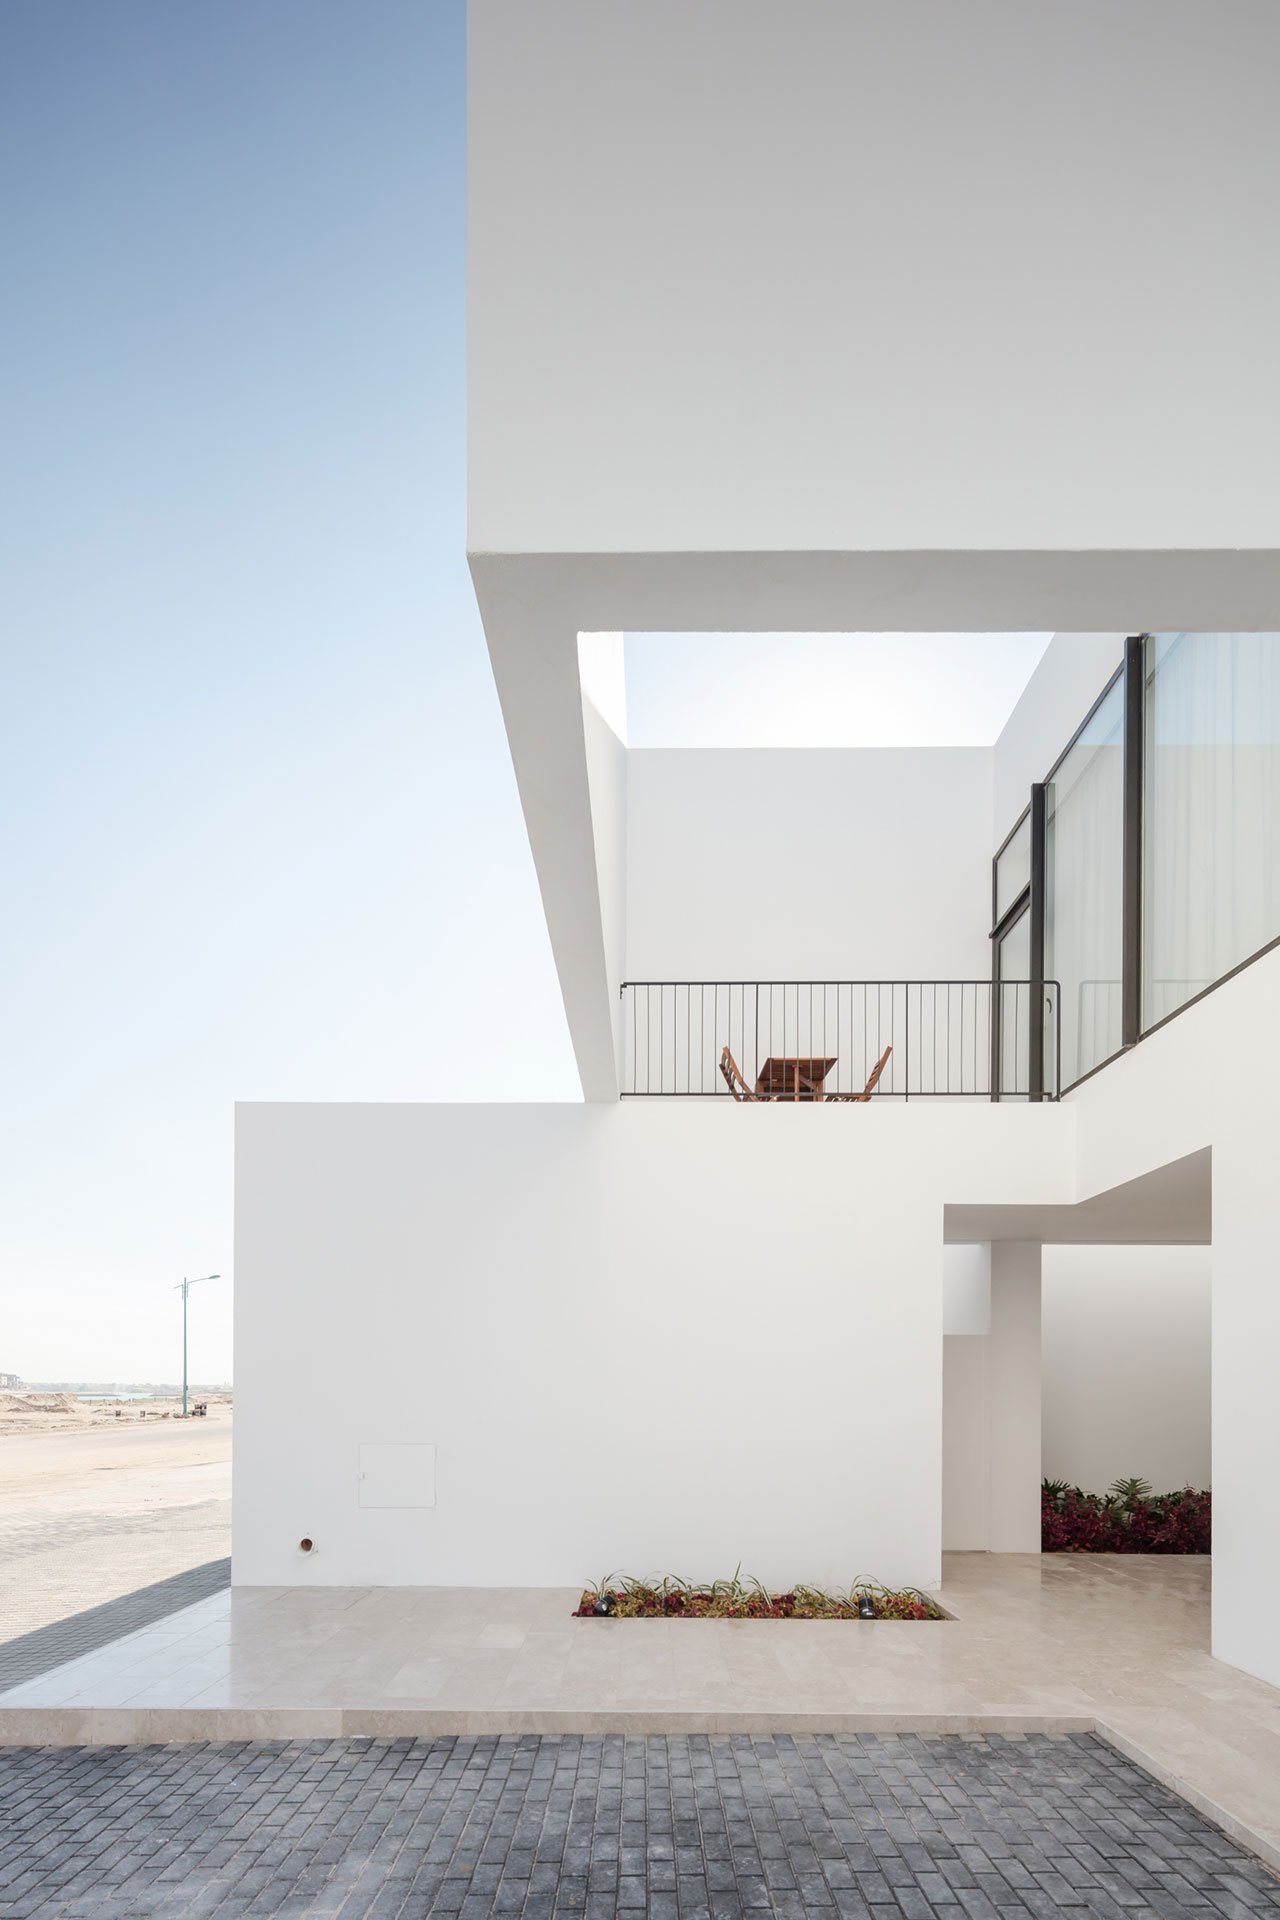 La serie de residence du nom d'Areia allit quelques materiaux naturels aux gigantesques structures cubiques et blanches